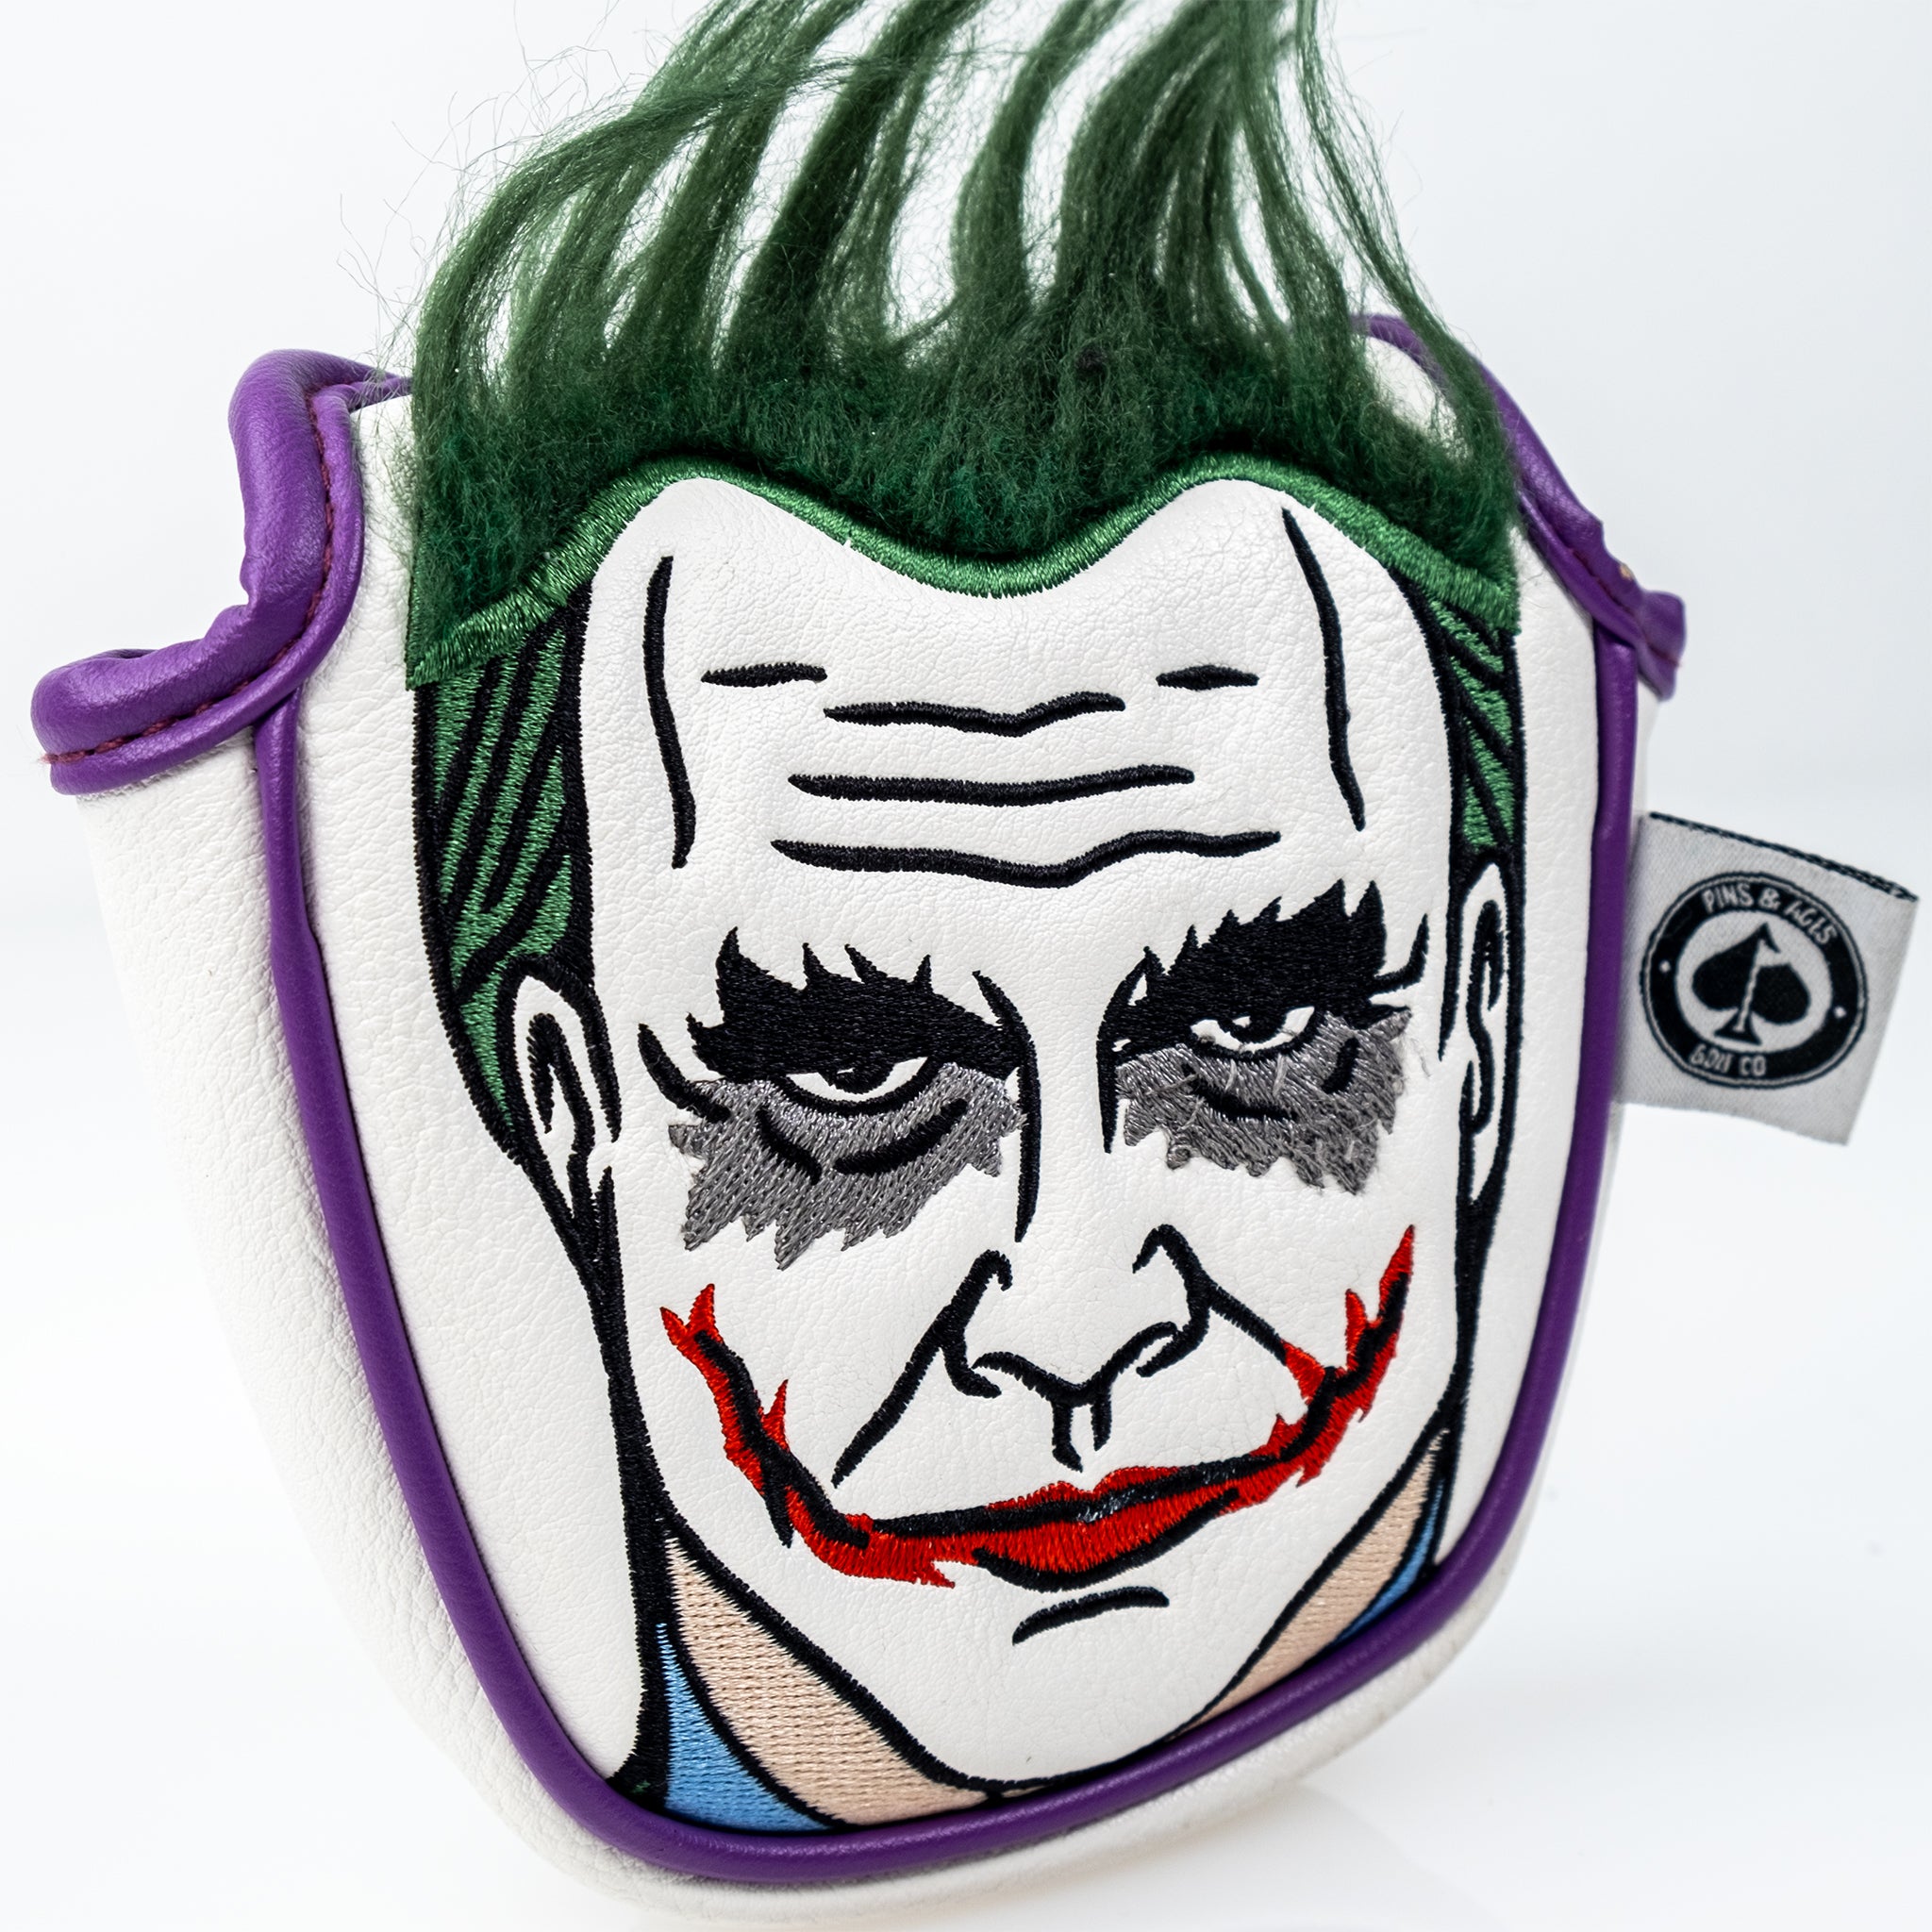 Joker - Mallet Putter Cover